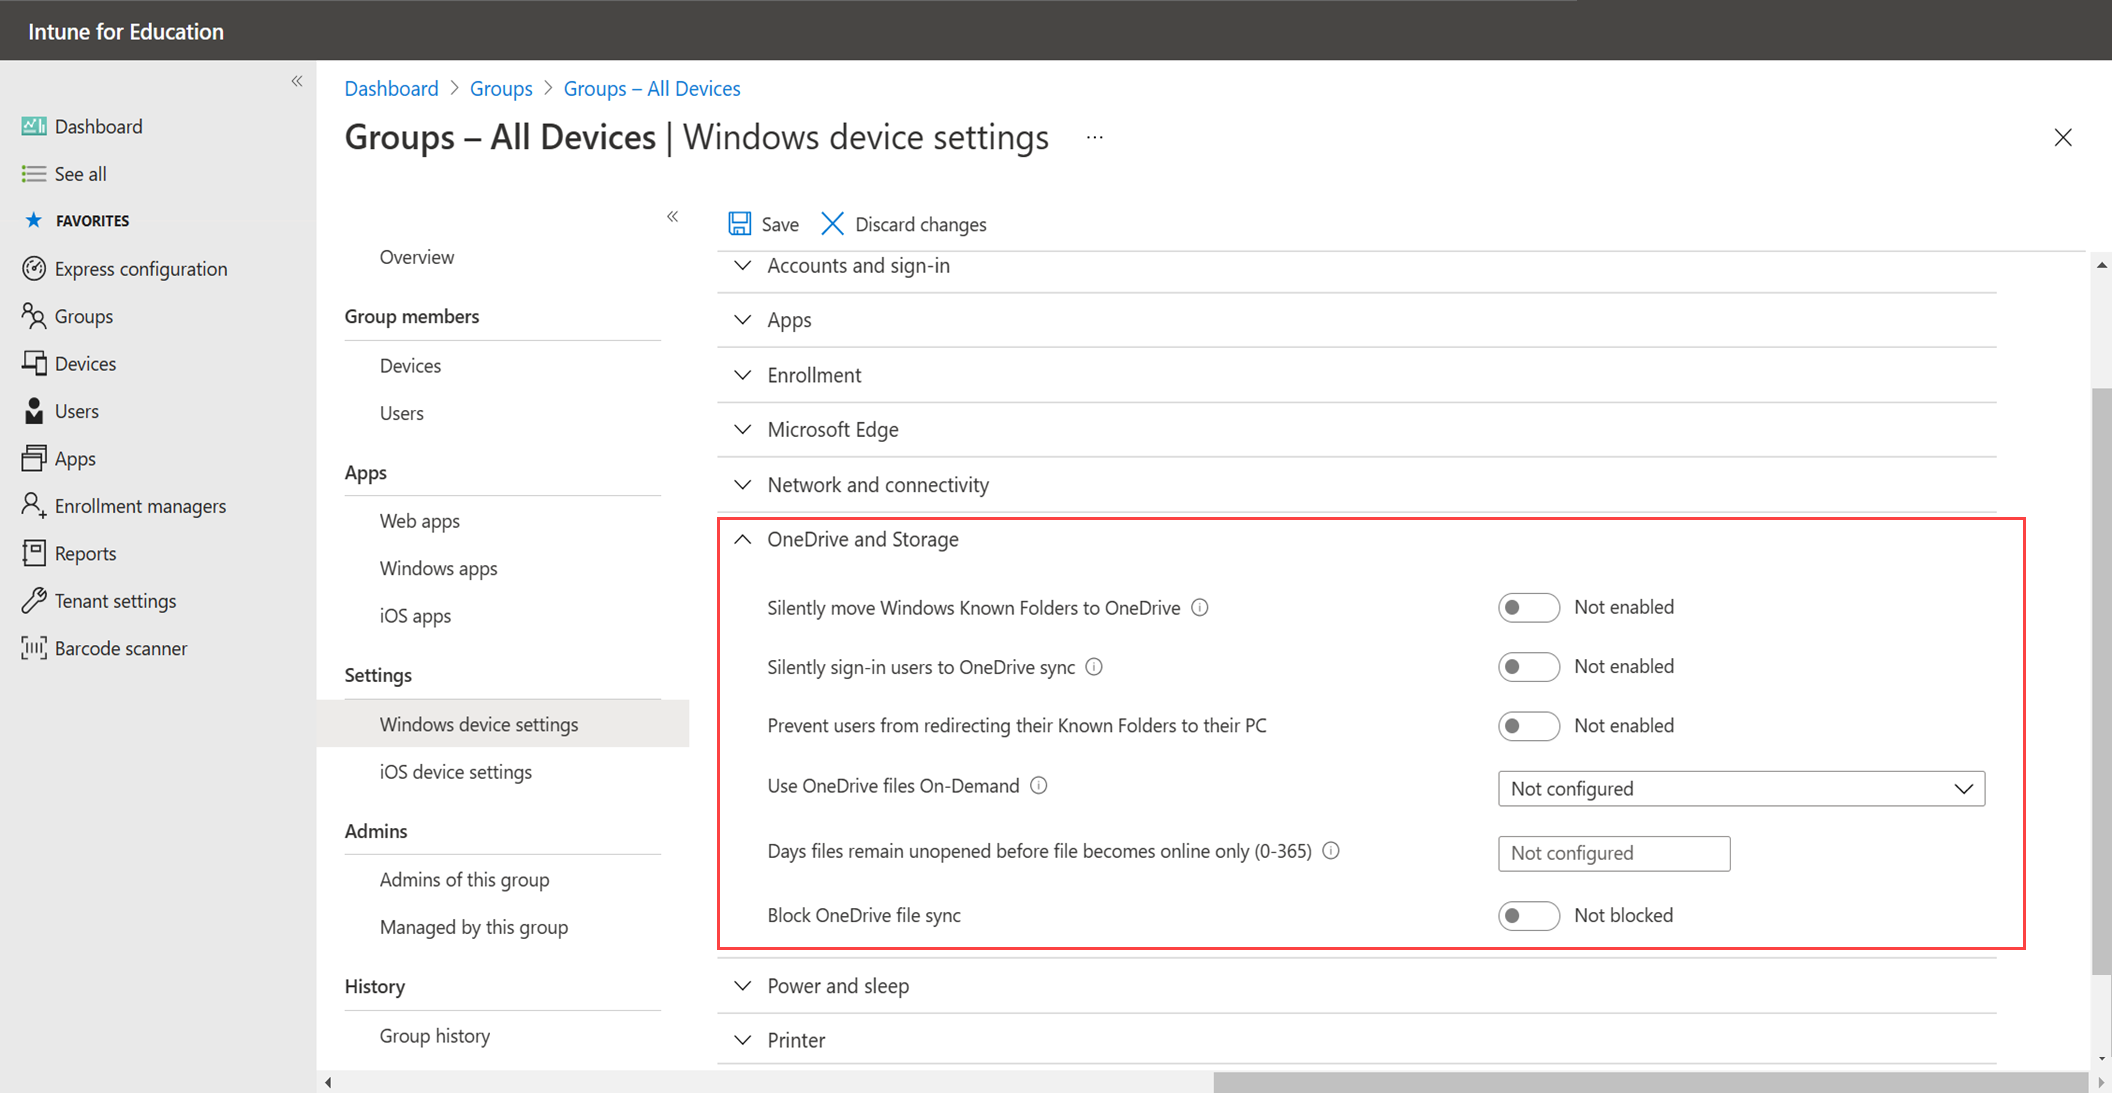 Exemple d’image mettant en évidence la nouvelle catégorie de stockage OneDrive & dans les paramètres de l’appareil Widows.